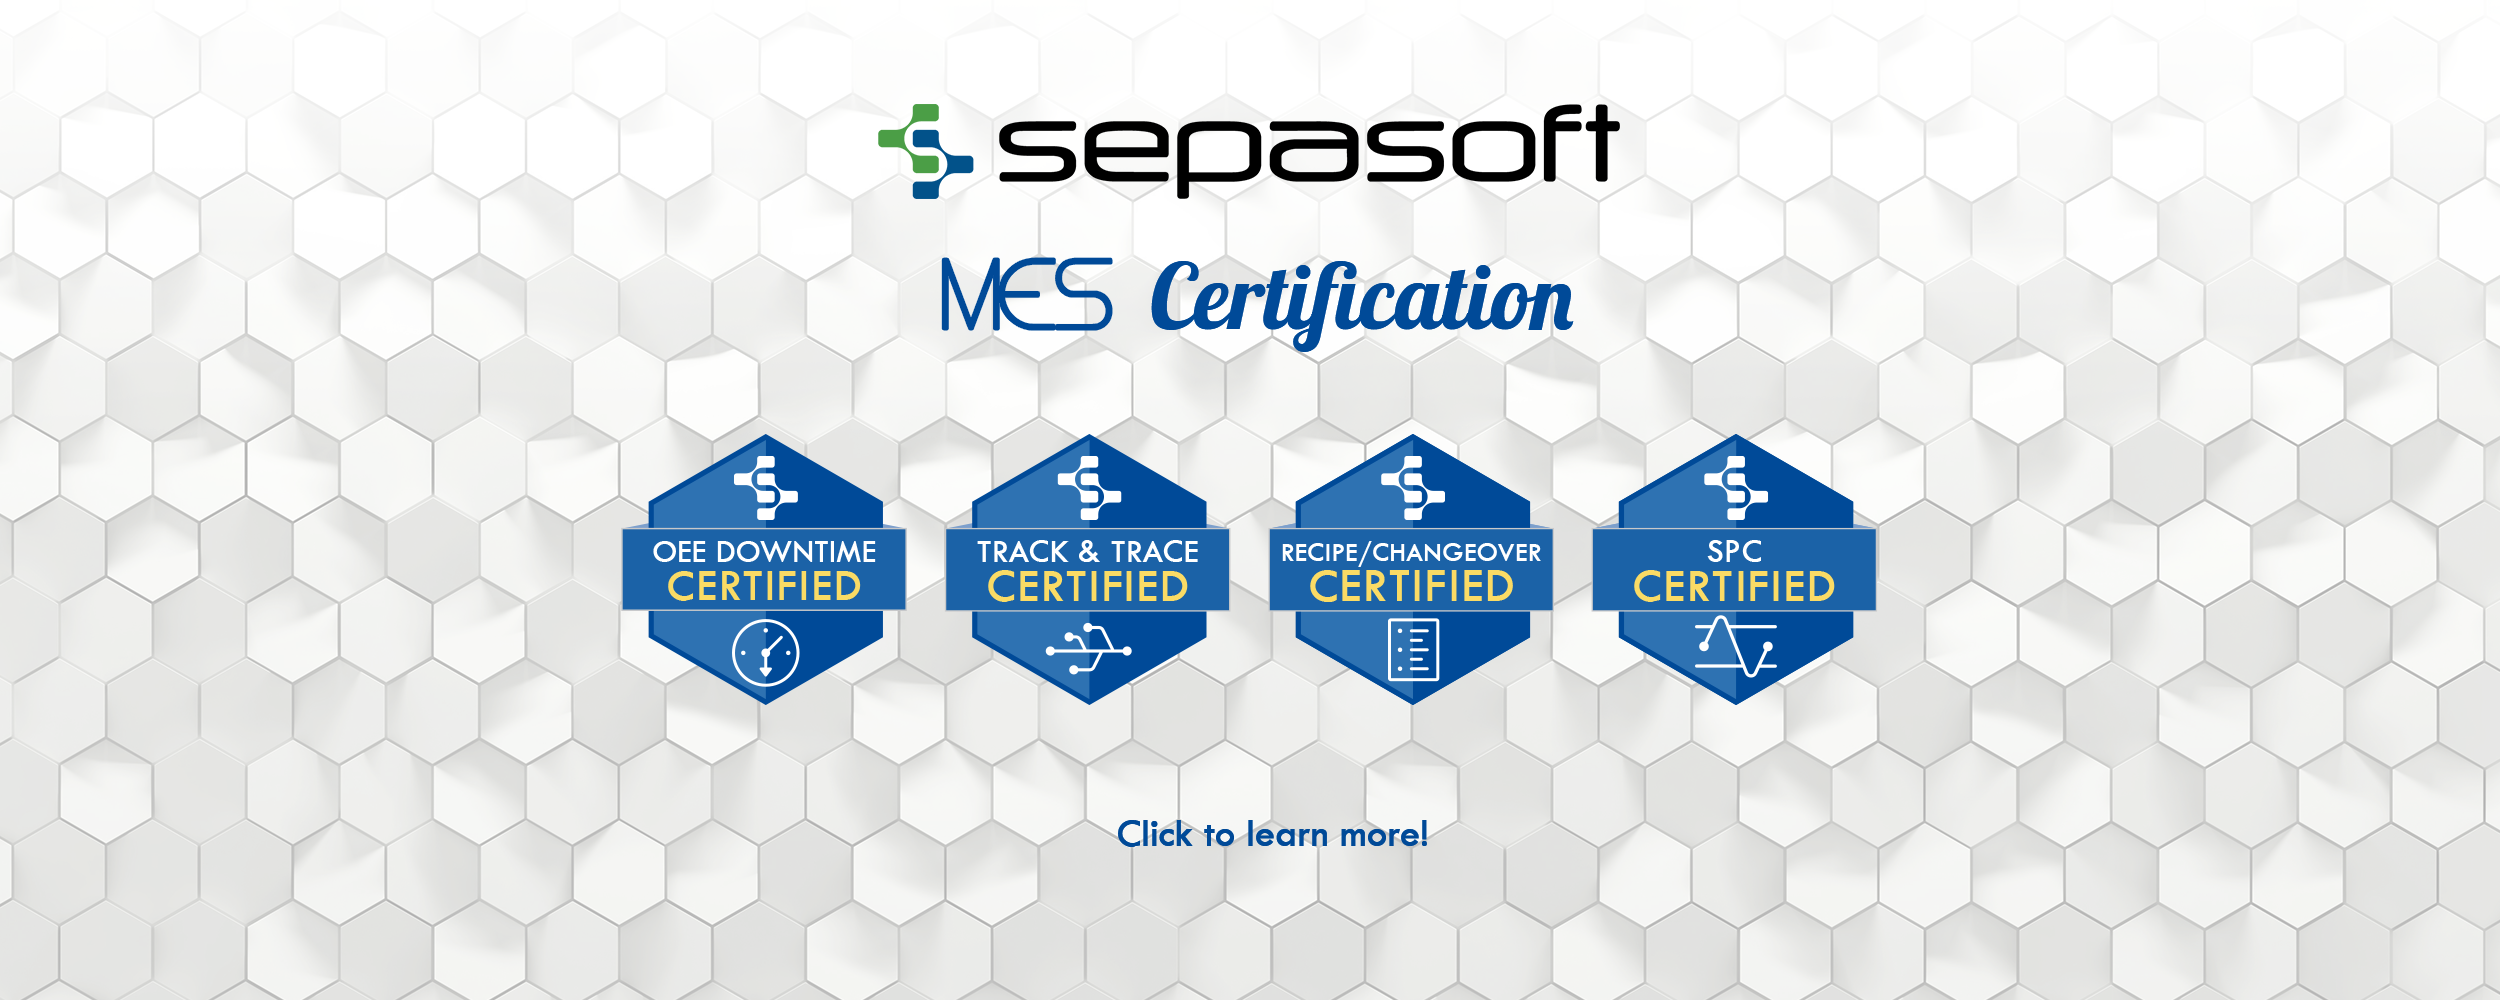 Sepasoft Banner_Certification